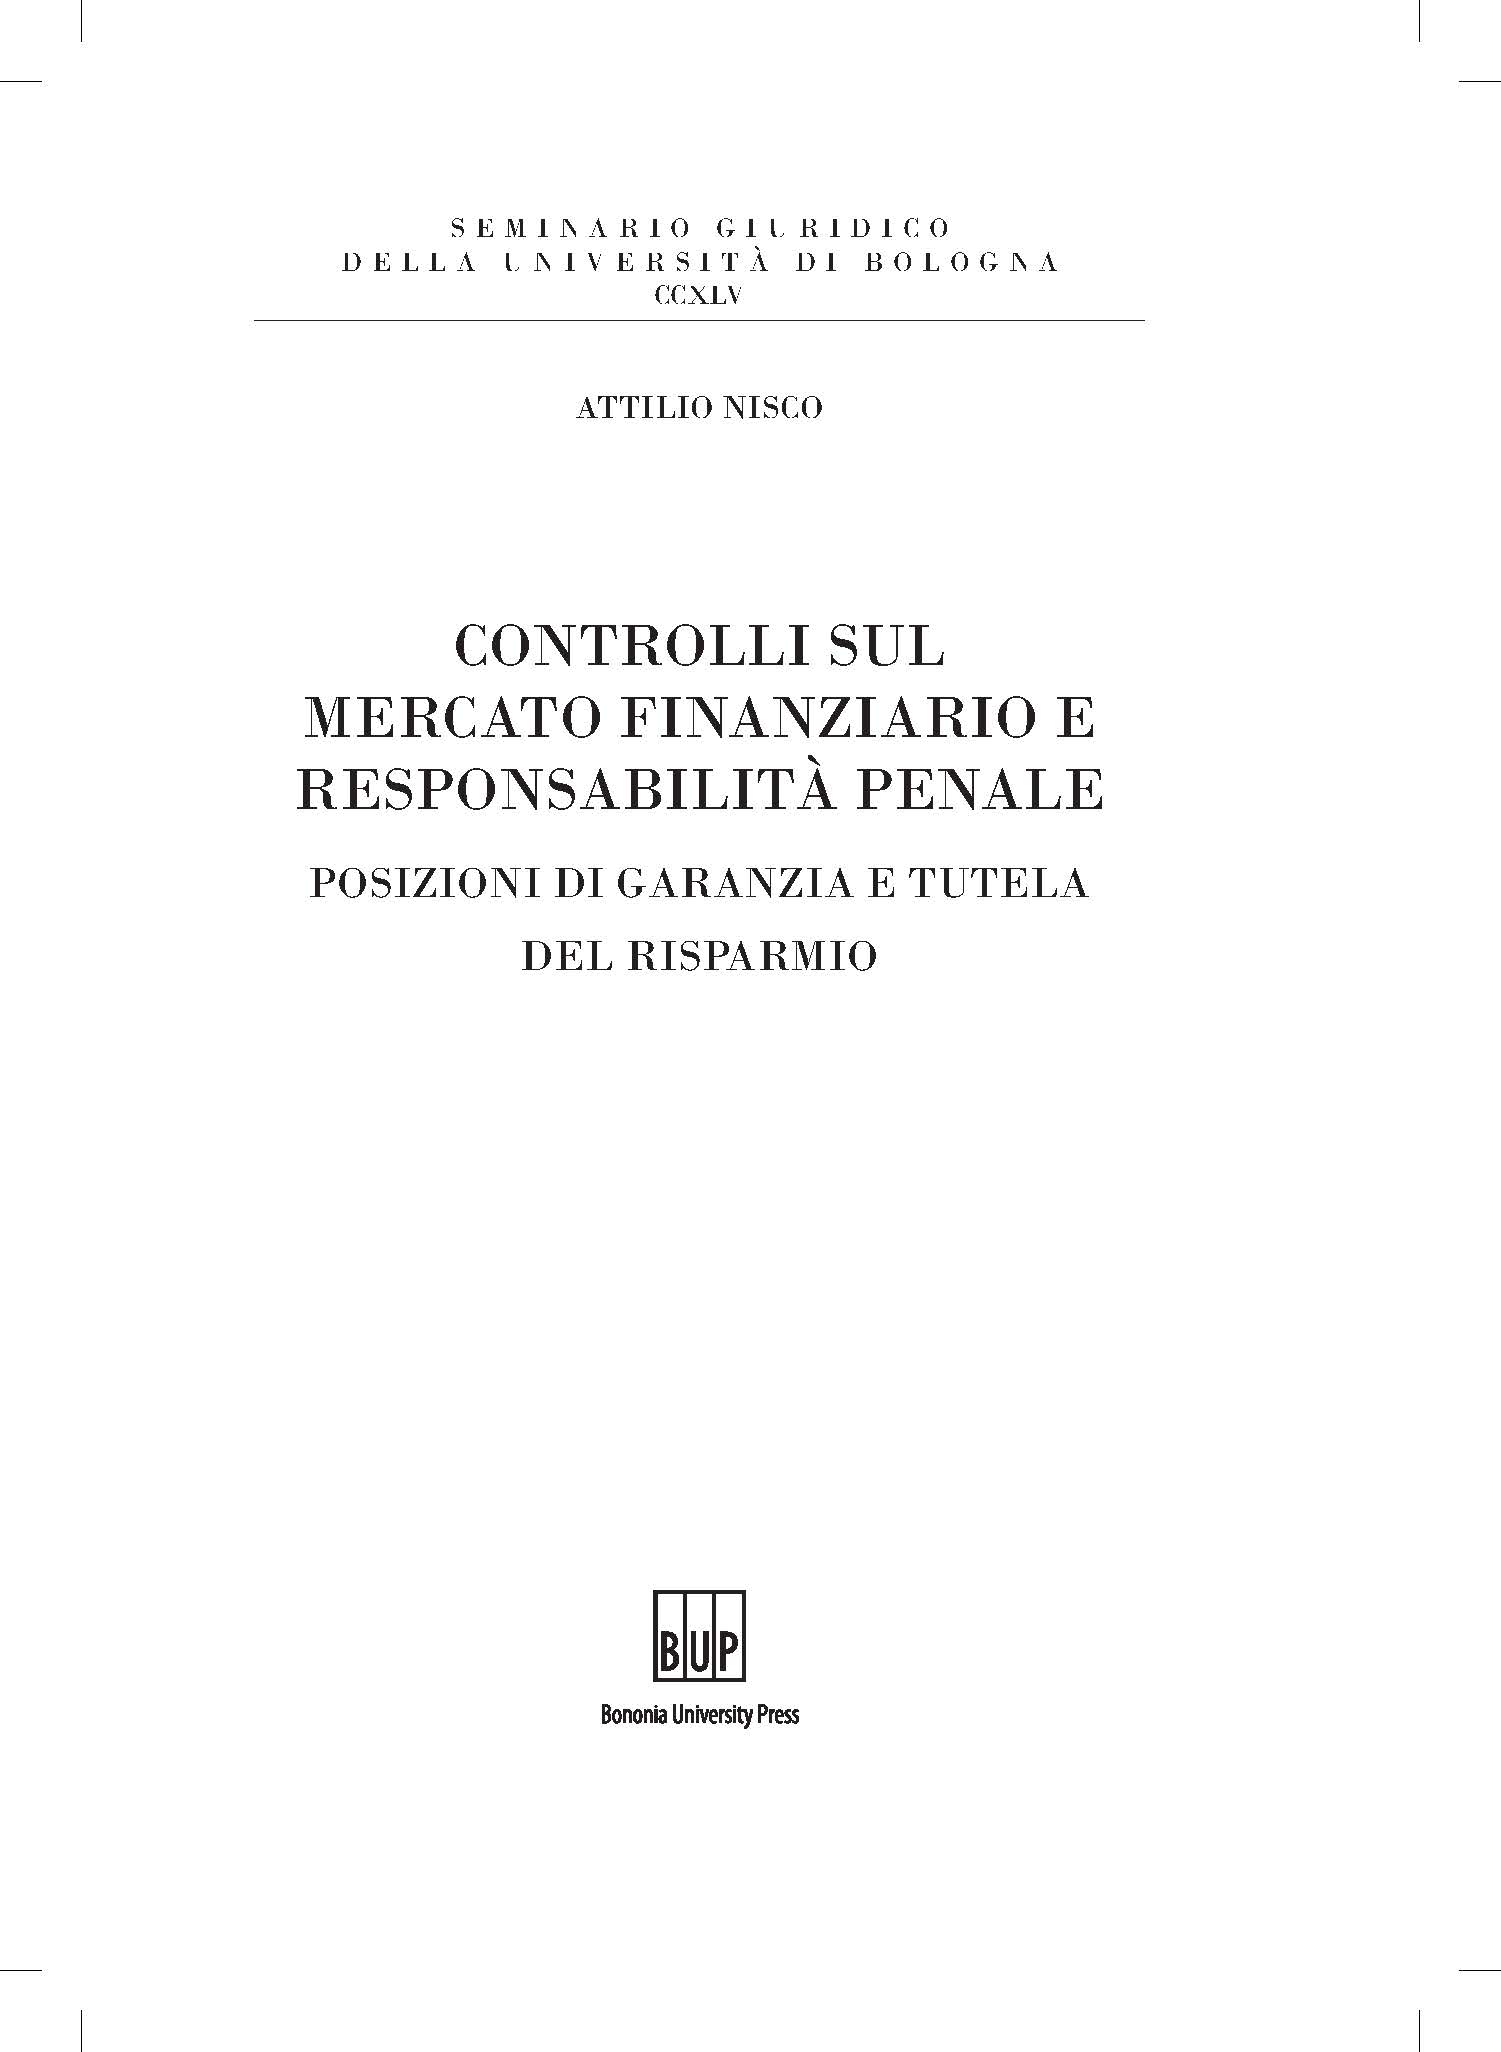 Controlli sul mercato finanziario e responsabilità penale - Bologna University Press